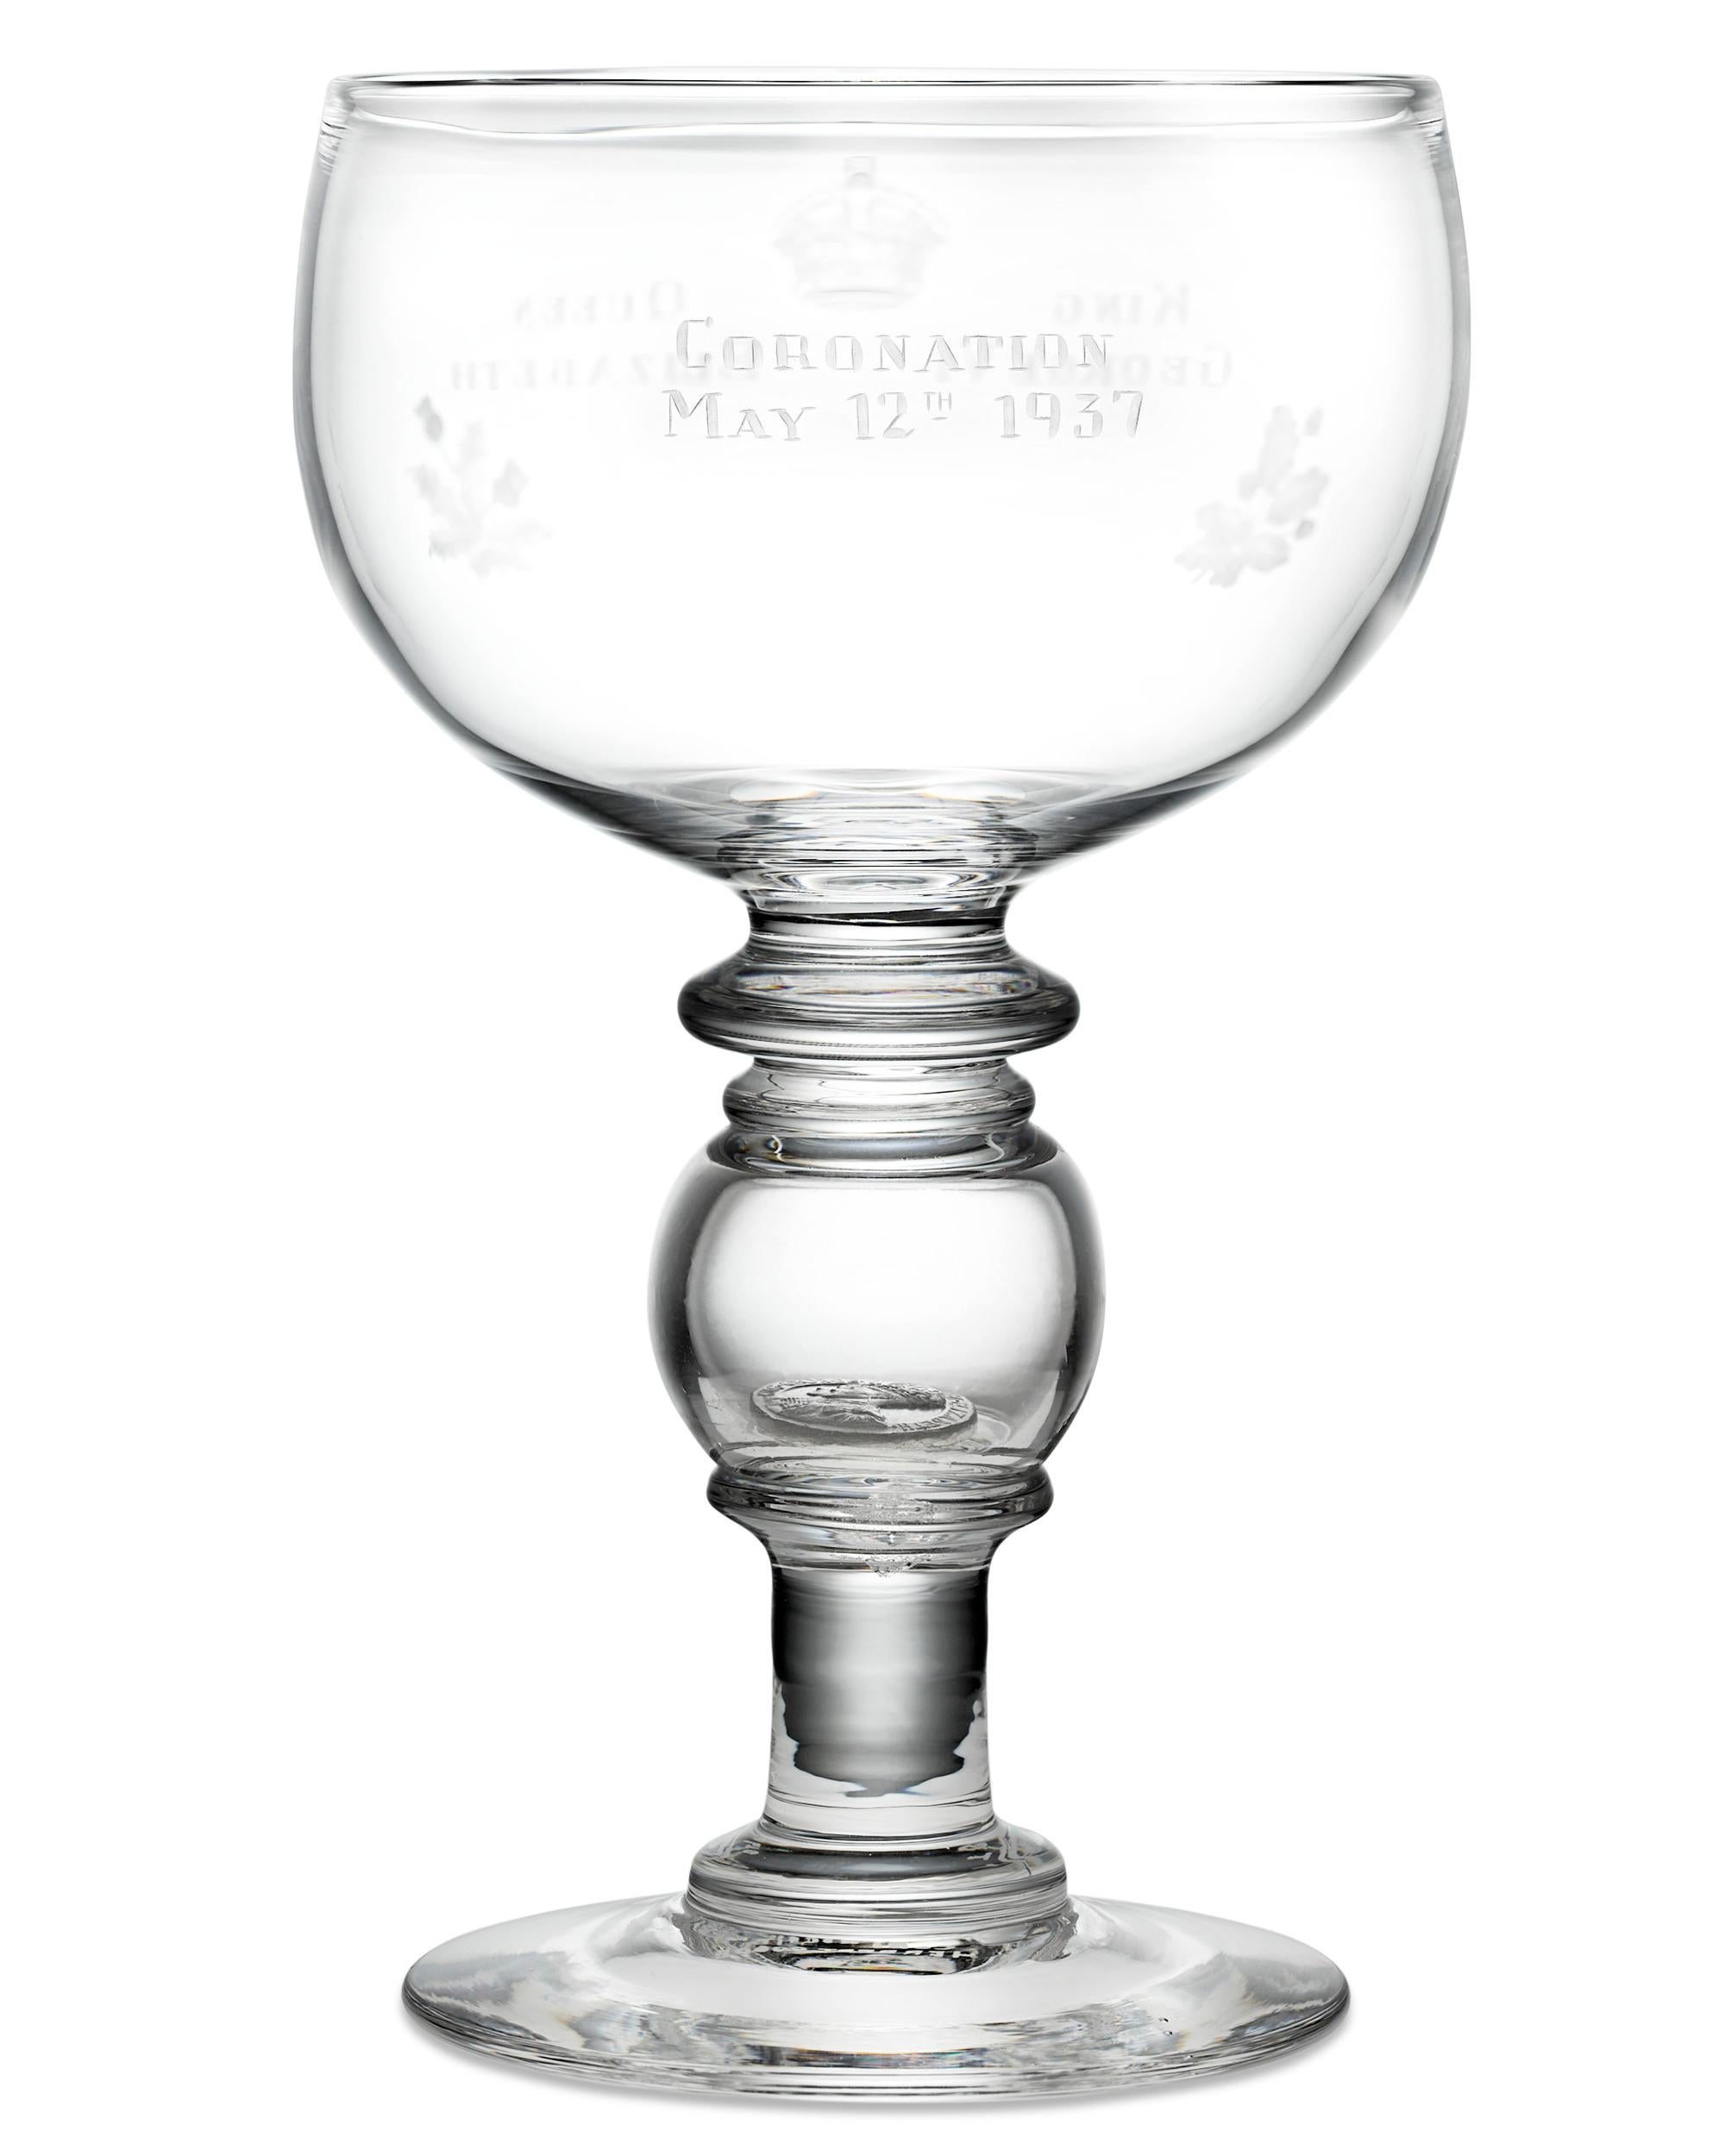 Ce gobelet en verre aux formes élégantes a été spécialement conçu pour célébrer le couronnement du roi George VI et de la reine Eleg. La coupe porte de chaque côté les noms des souverains et la date de leur couronnement, le 12 mai 1937, et est